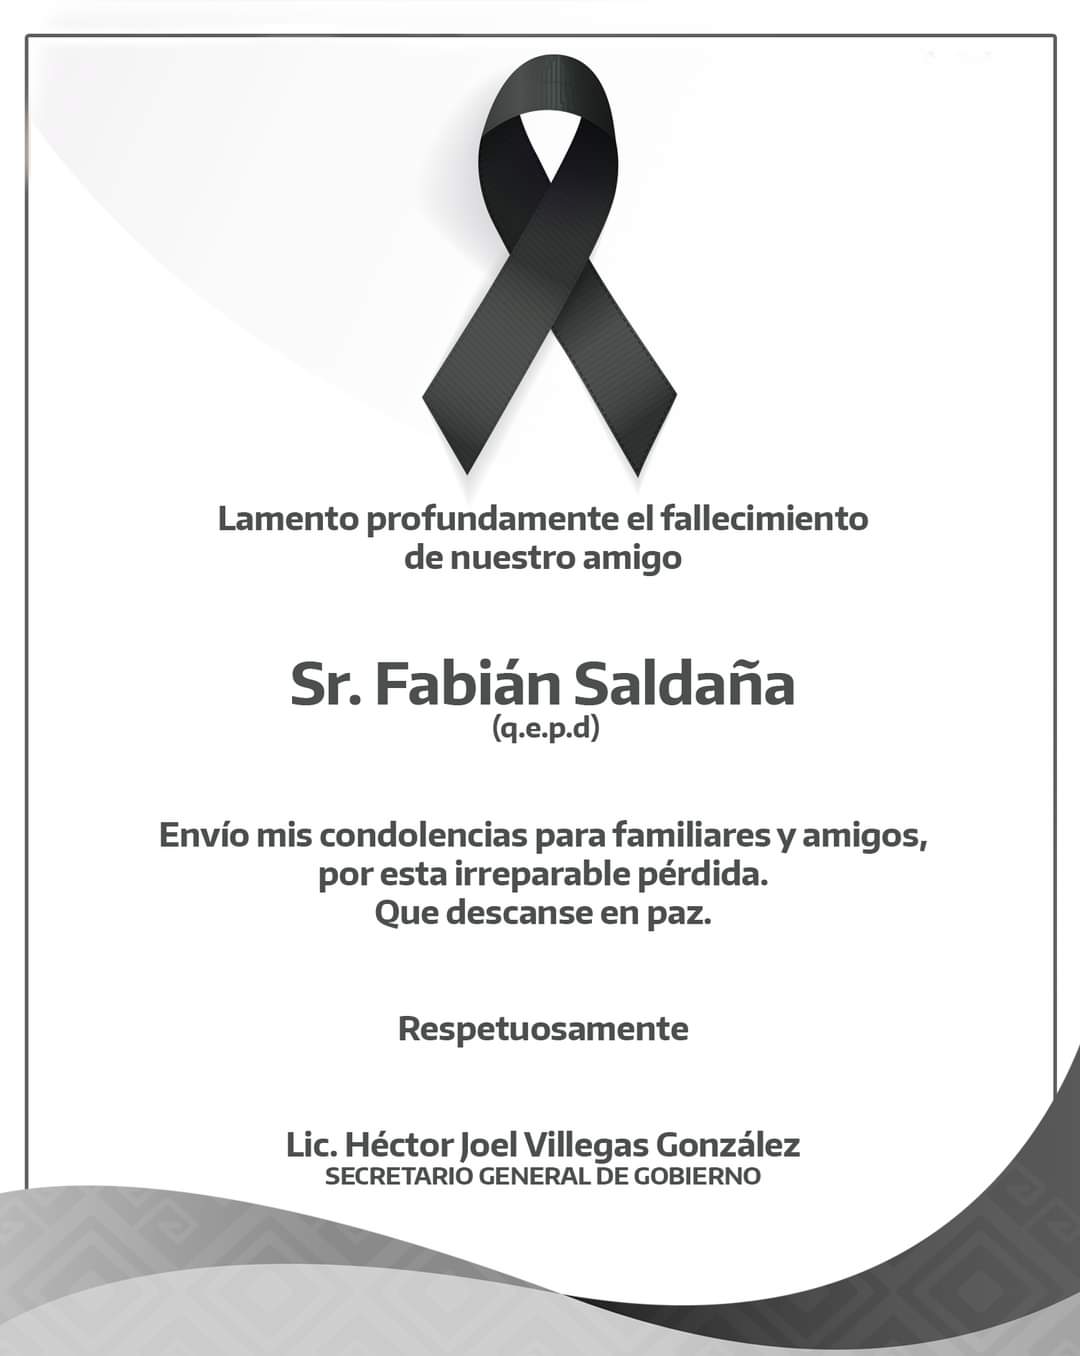 Secretario General de Gobierno, Héctor Joel Villegas González, Muestra sus condolencias por la Muerte de Héroe riobravense: Sr. Favian Saldaña.